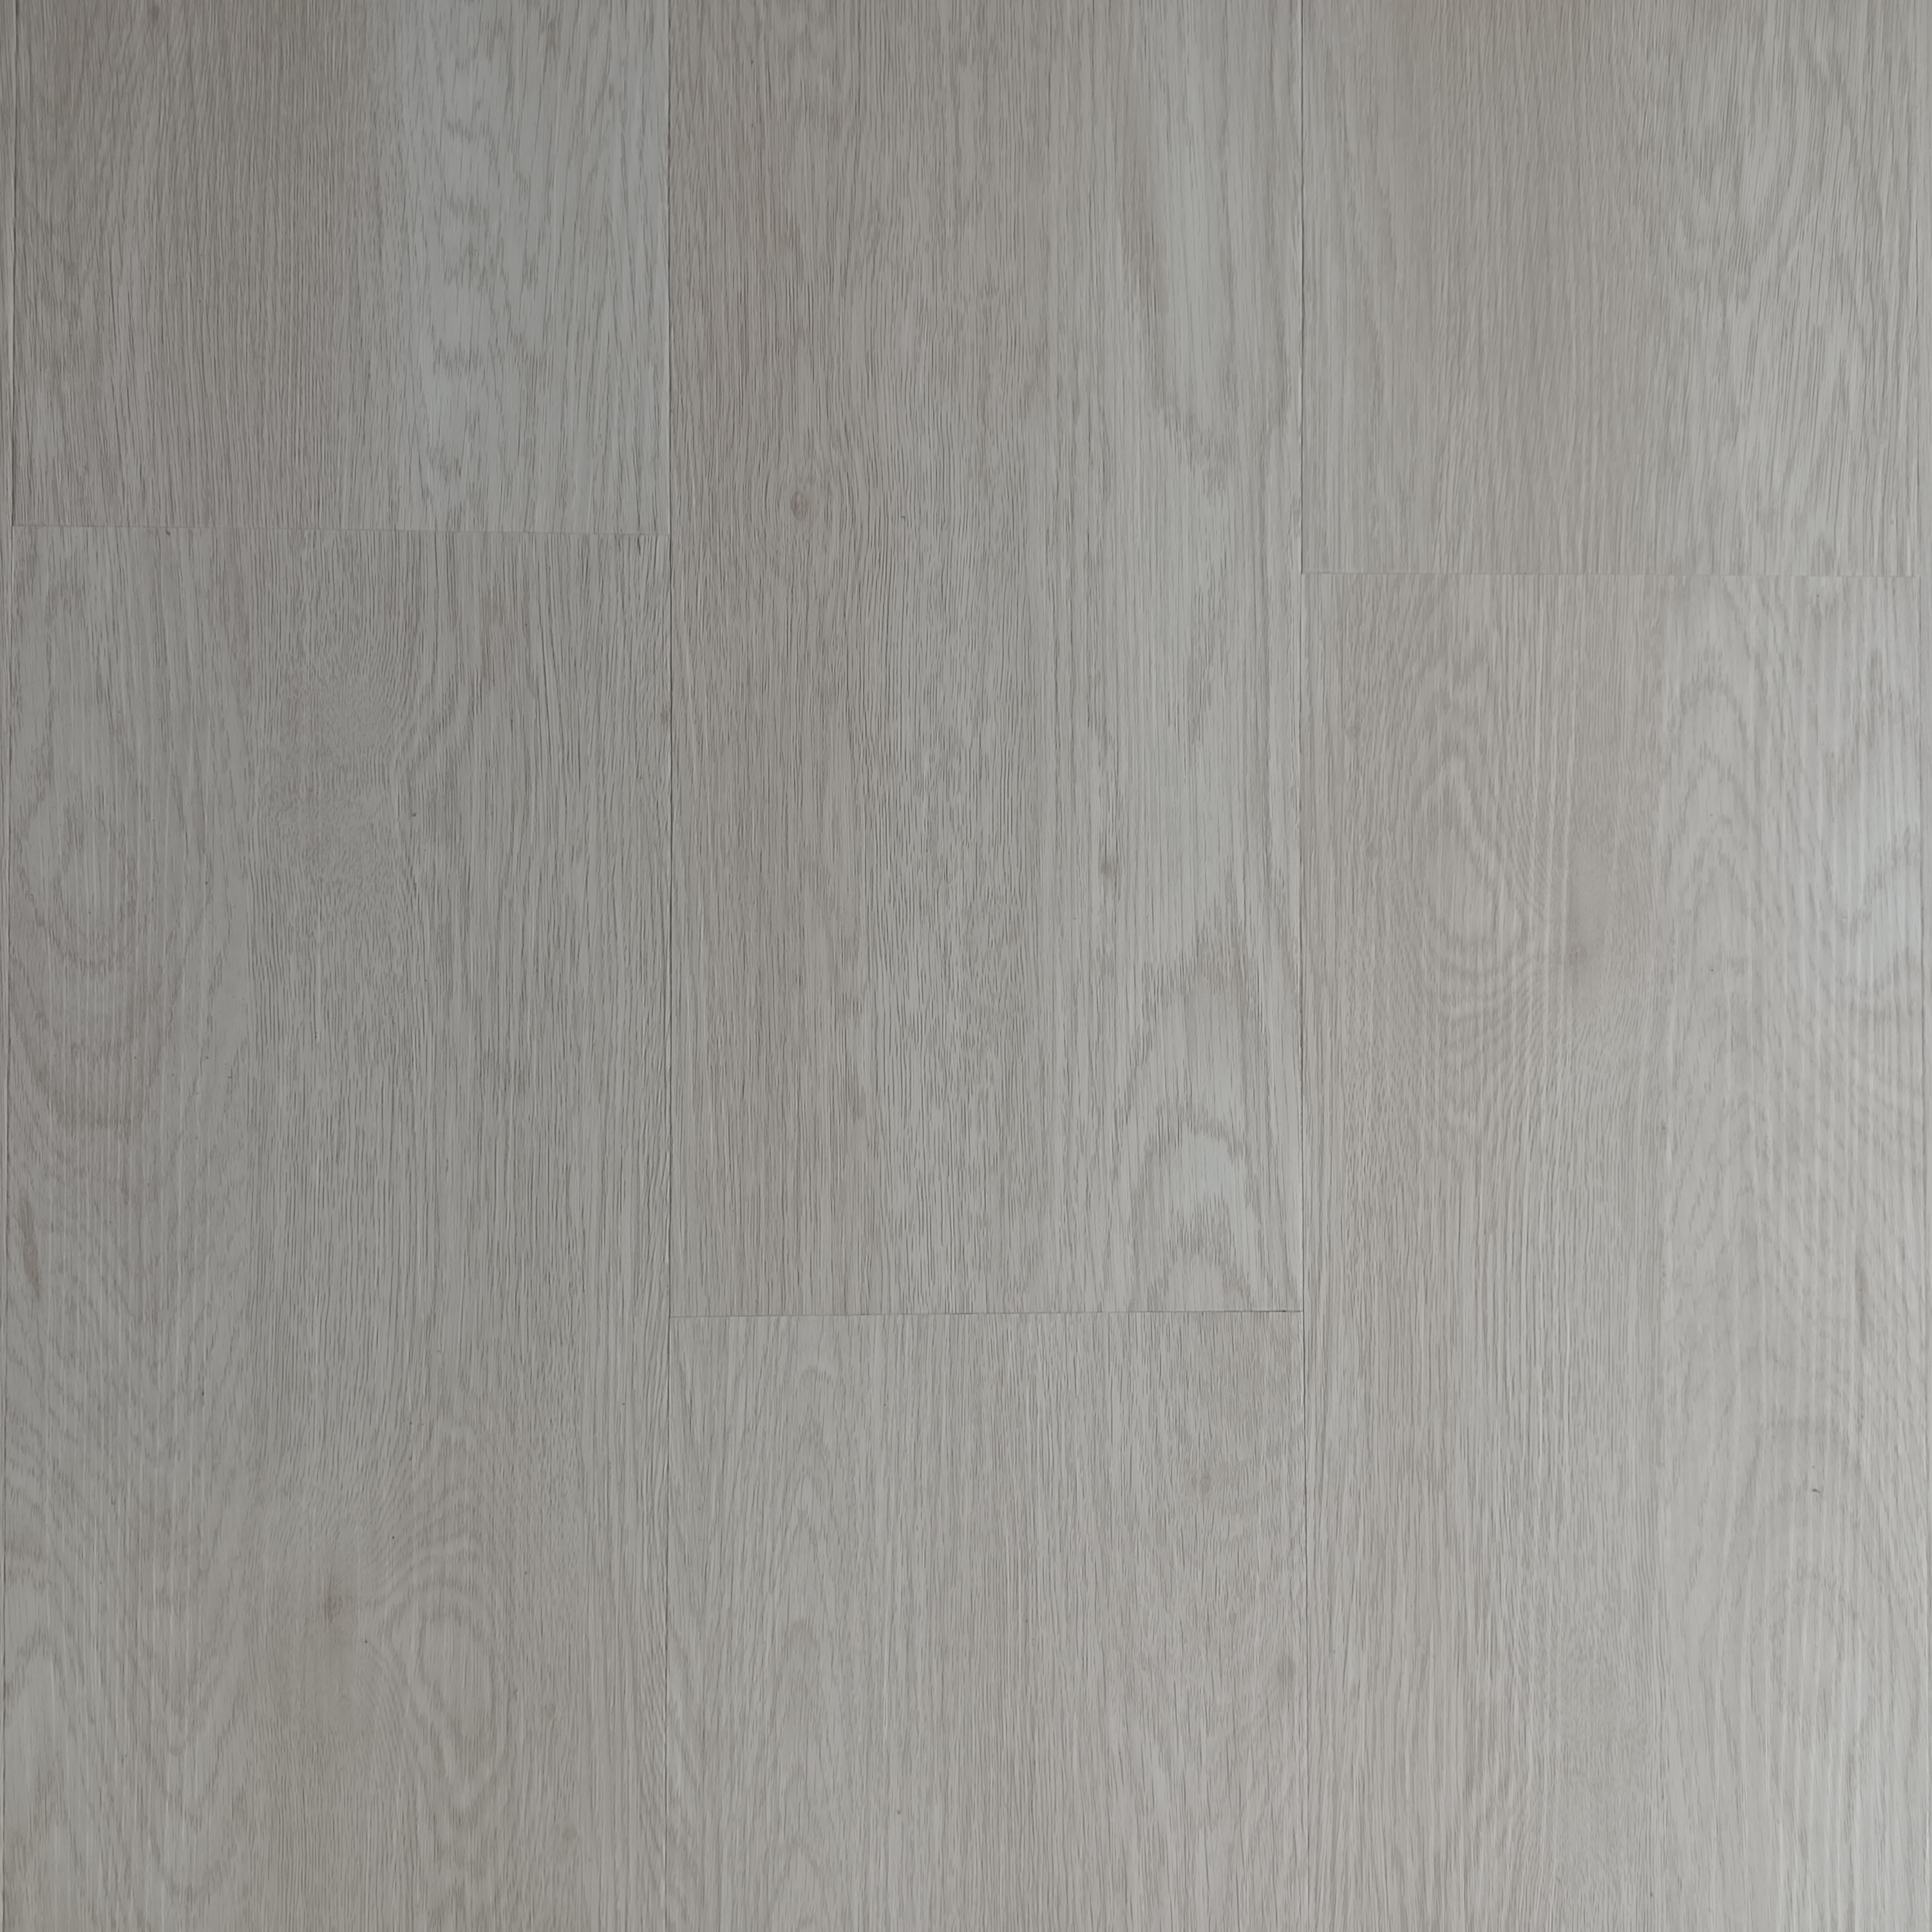 Chinese wholesale Victory Timber Floors -
 Hot Sale Wooden Grain Rigid SPC Flooring Waterproof Vinyl Planks Flooring – Kangton